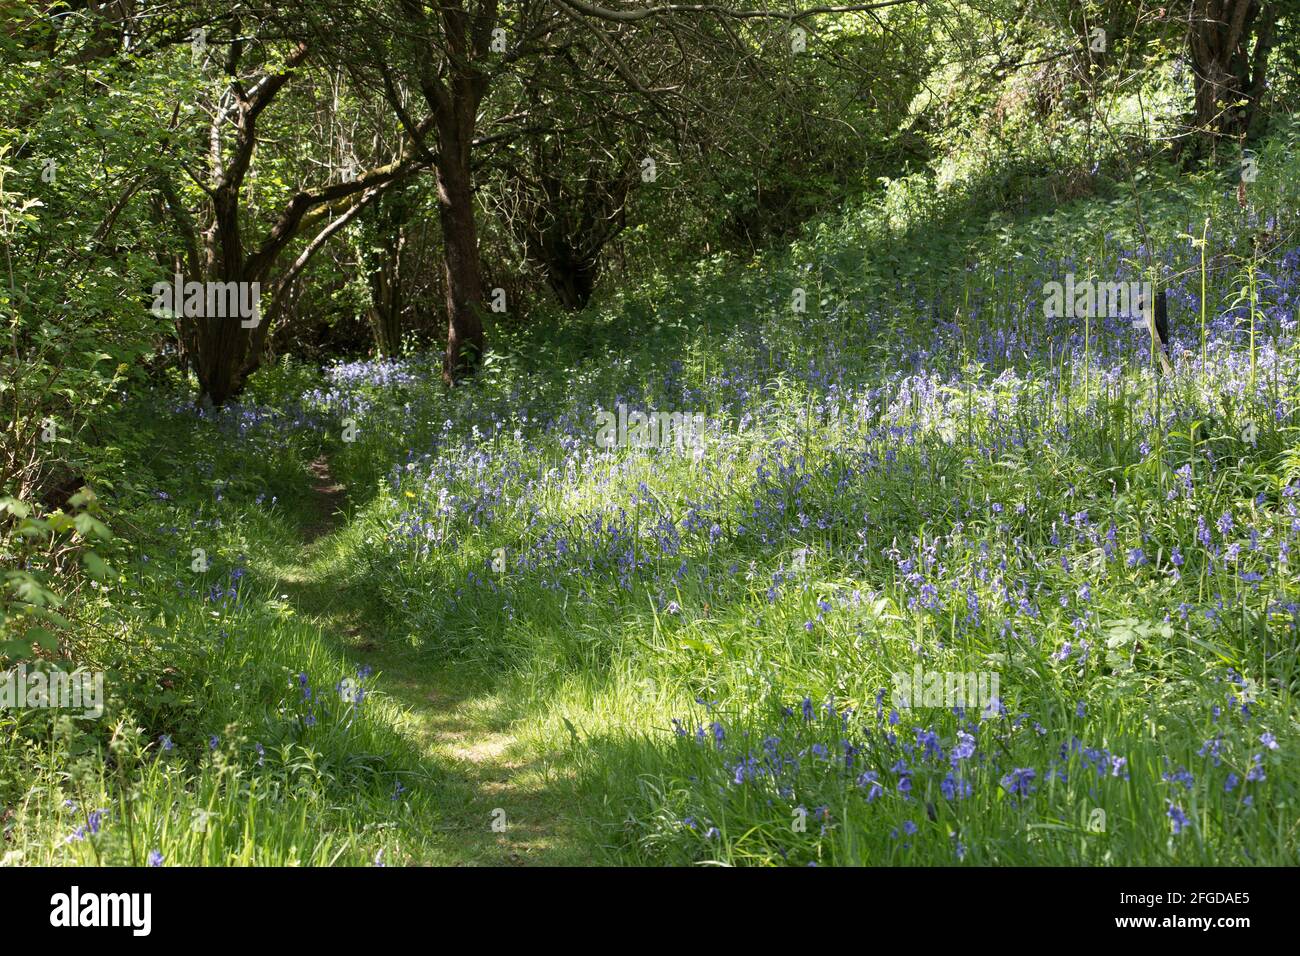 Madera de bluebell en primavera floreciendo con flores de bluebell, Hyacintoides non-scripta, en luz de aplicación, Shropshire Inglaterra Foto de stock